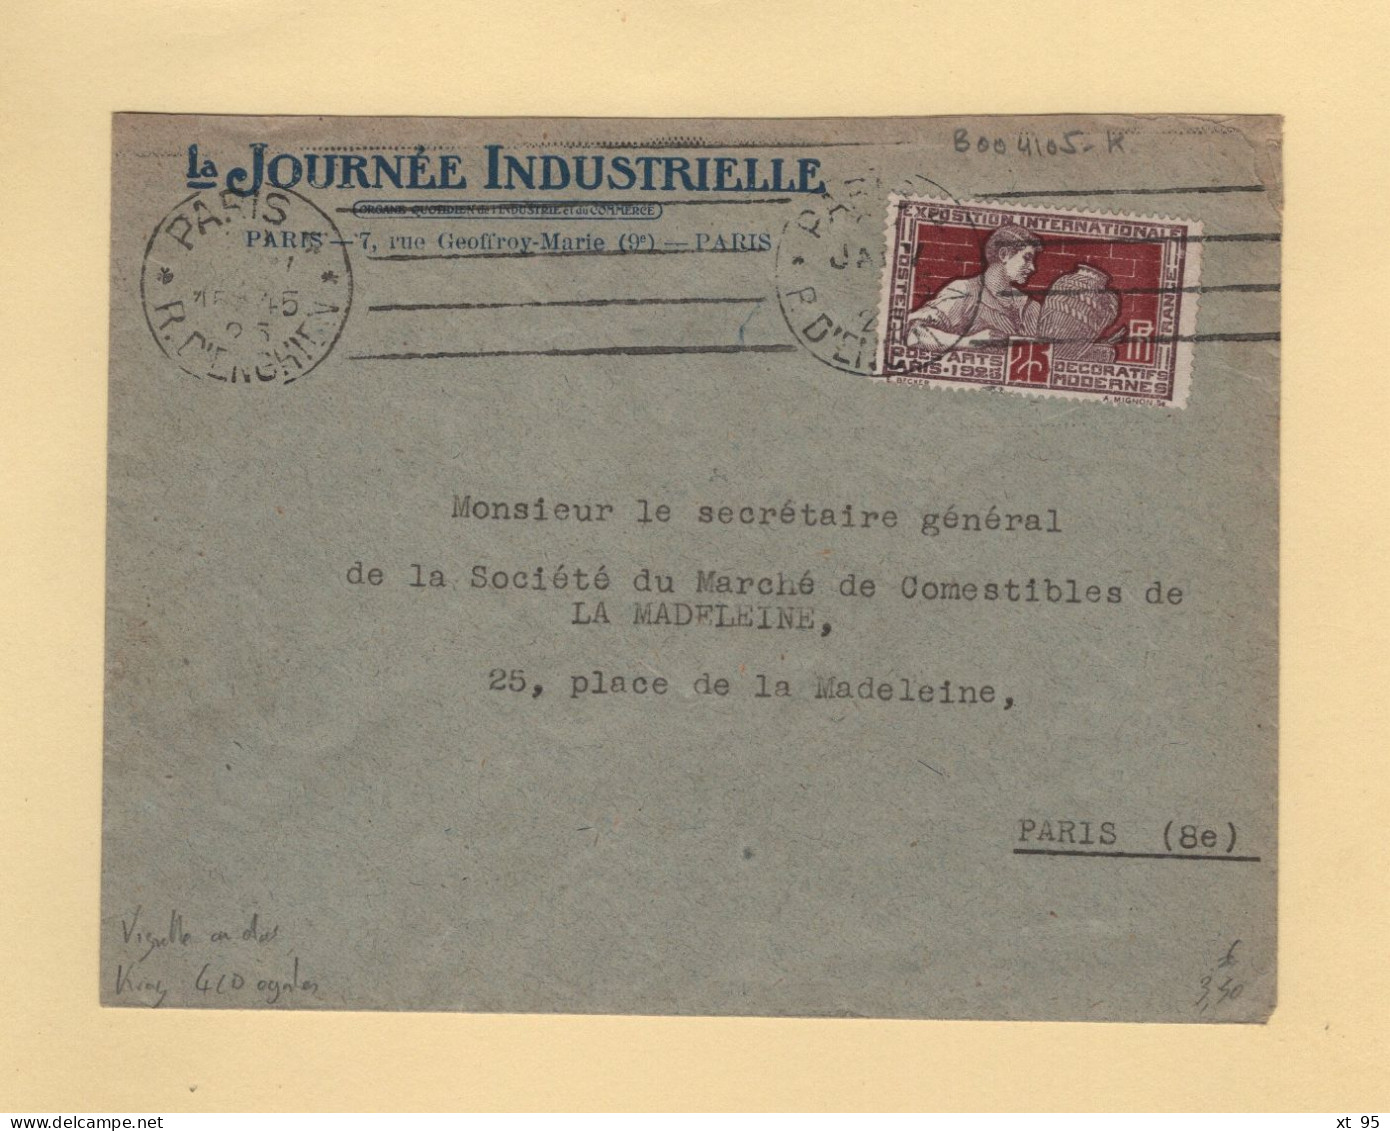 Krag - Paris 4 - 1925 - 4 Lignes Droites Inegales - Journee Industrielle - Vignette Au Dos - Mechanical Postmarks (Advertisement)